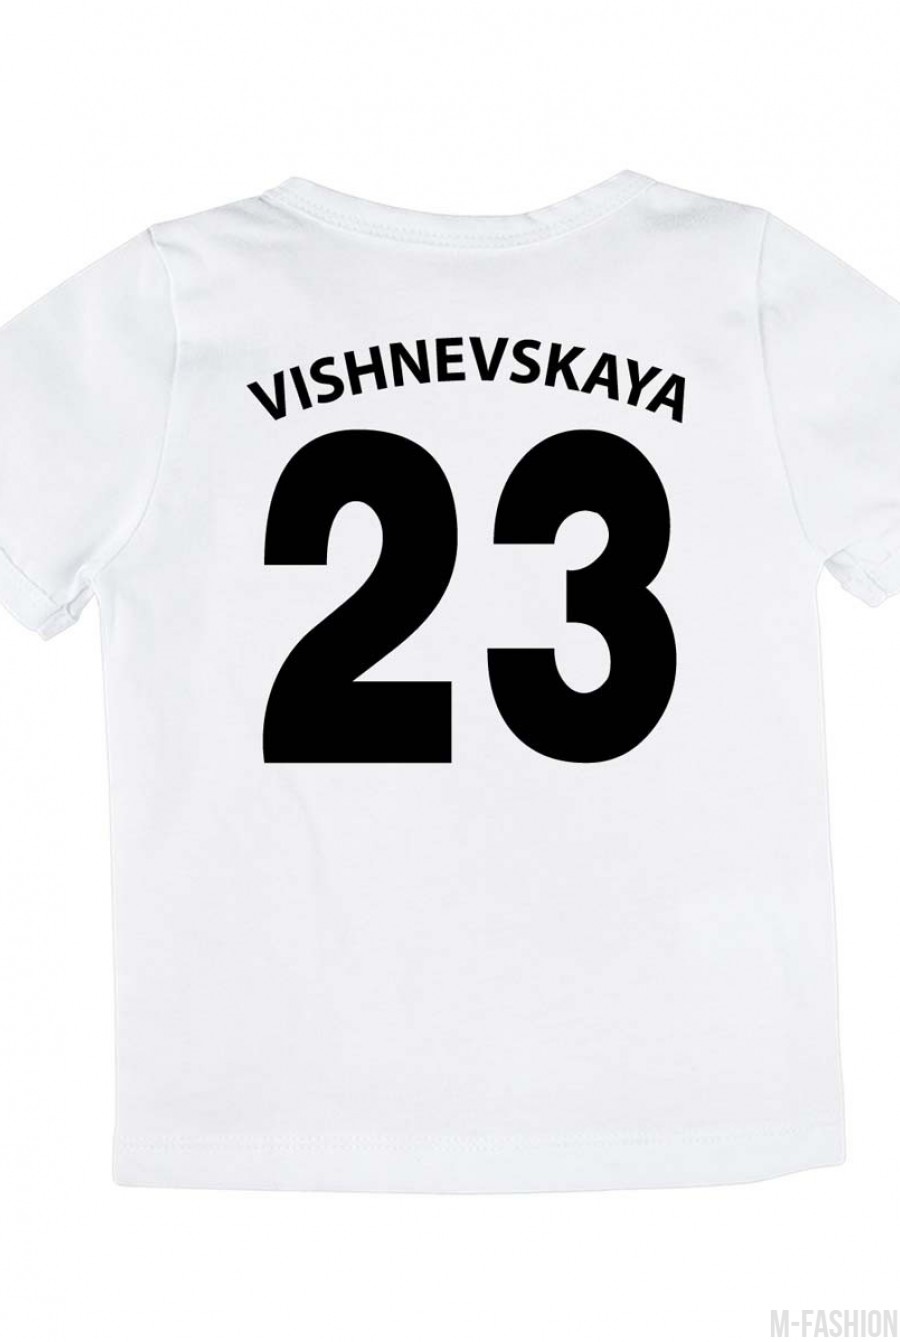 Хлопковая футболка с принтом и возможностью индивидуальной печати фамилии и номера- Фото 3